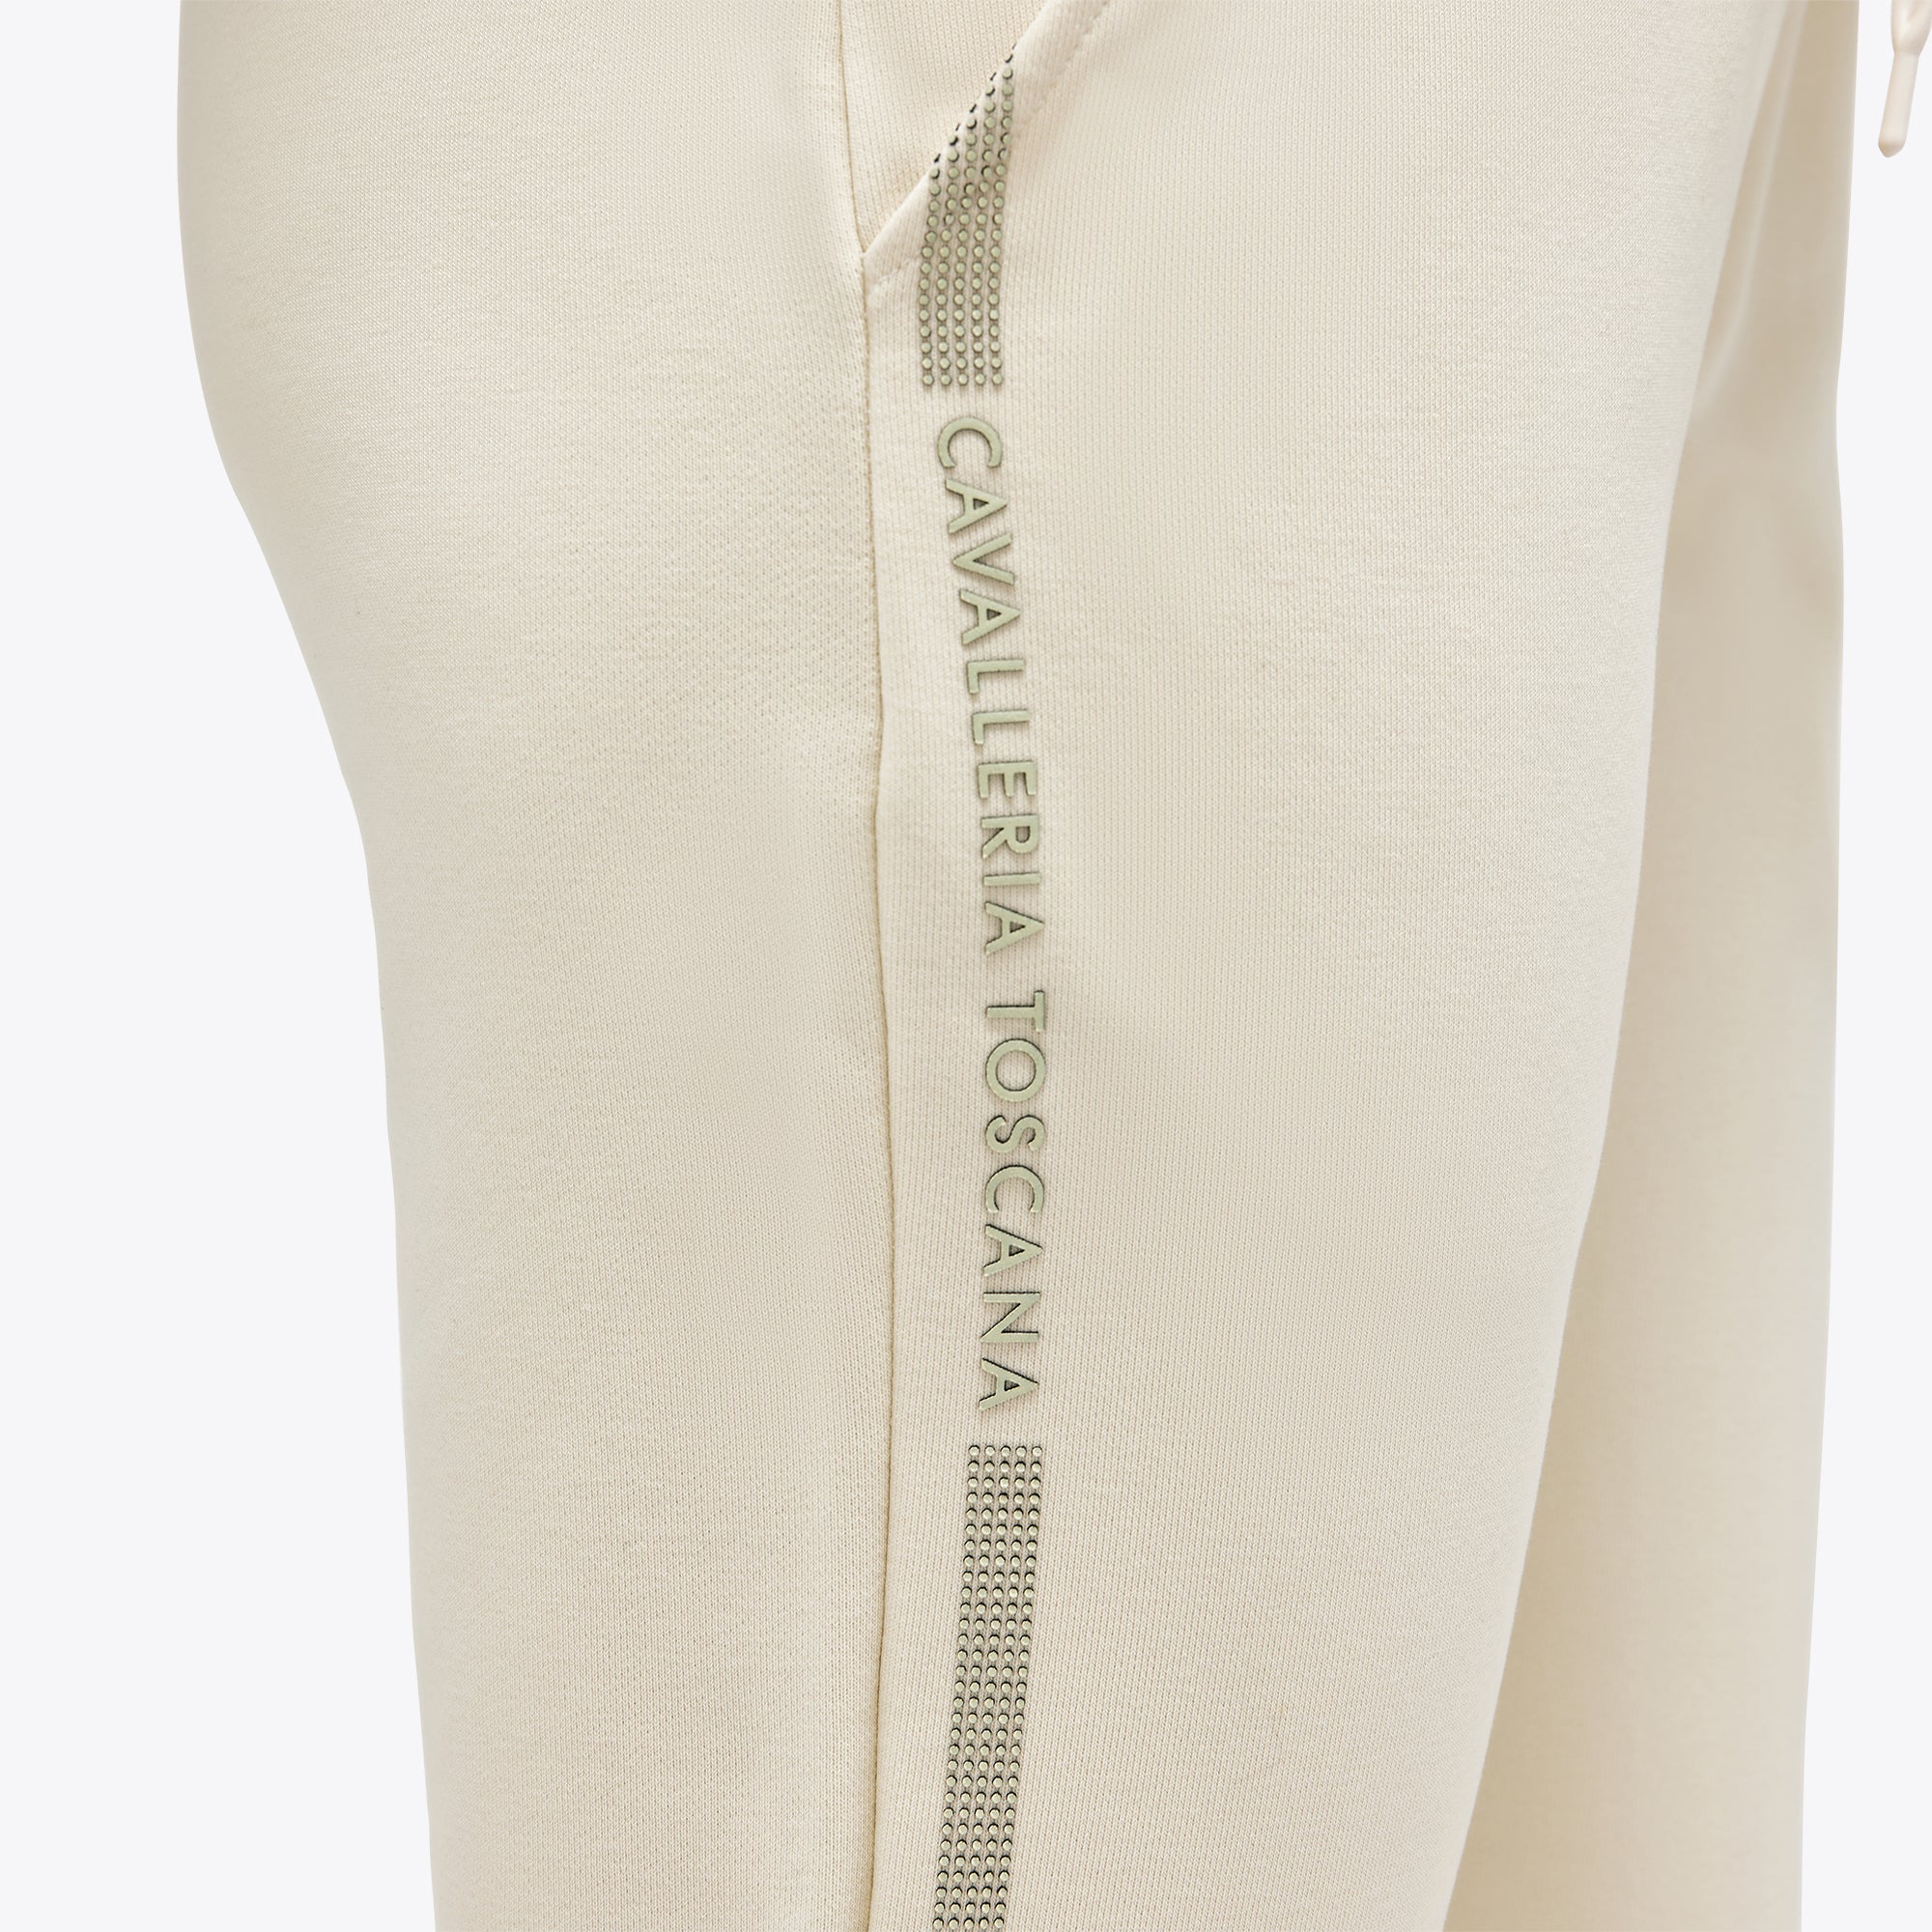 Diese bequemen Sweatpants von Cavalleria Toscana sind aus weicher Baumwolle gefertigt und mit einem angesagten Allover-Print versehen. Sie sind elastisch im Bund und an den Beinabschlüssen für optimalen Tragekomfort. Die Hose hat zwei Eingrifftaschen vorne und eine Gesäßtasche. Sie ist in der Farbe Offwhite erhältlich.